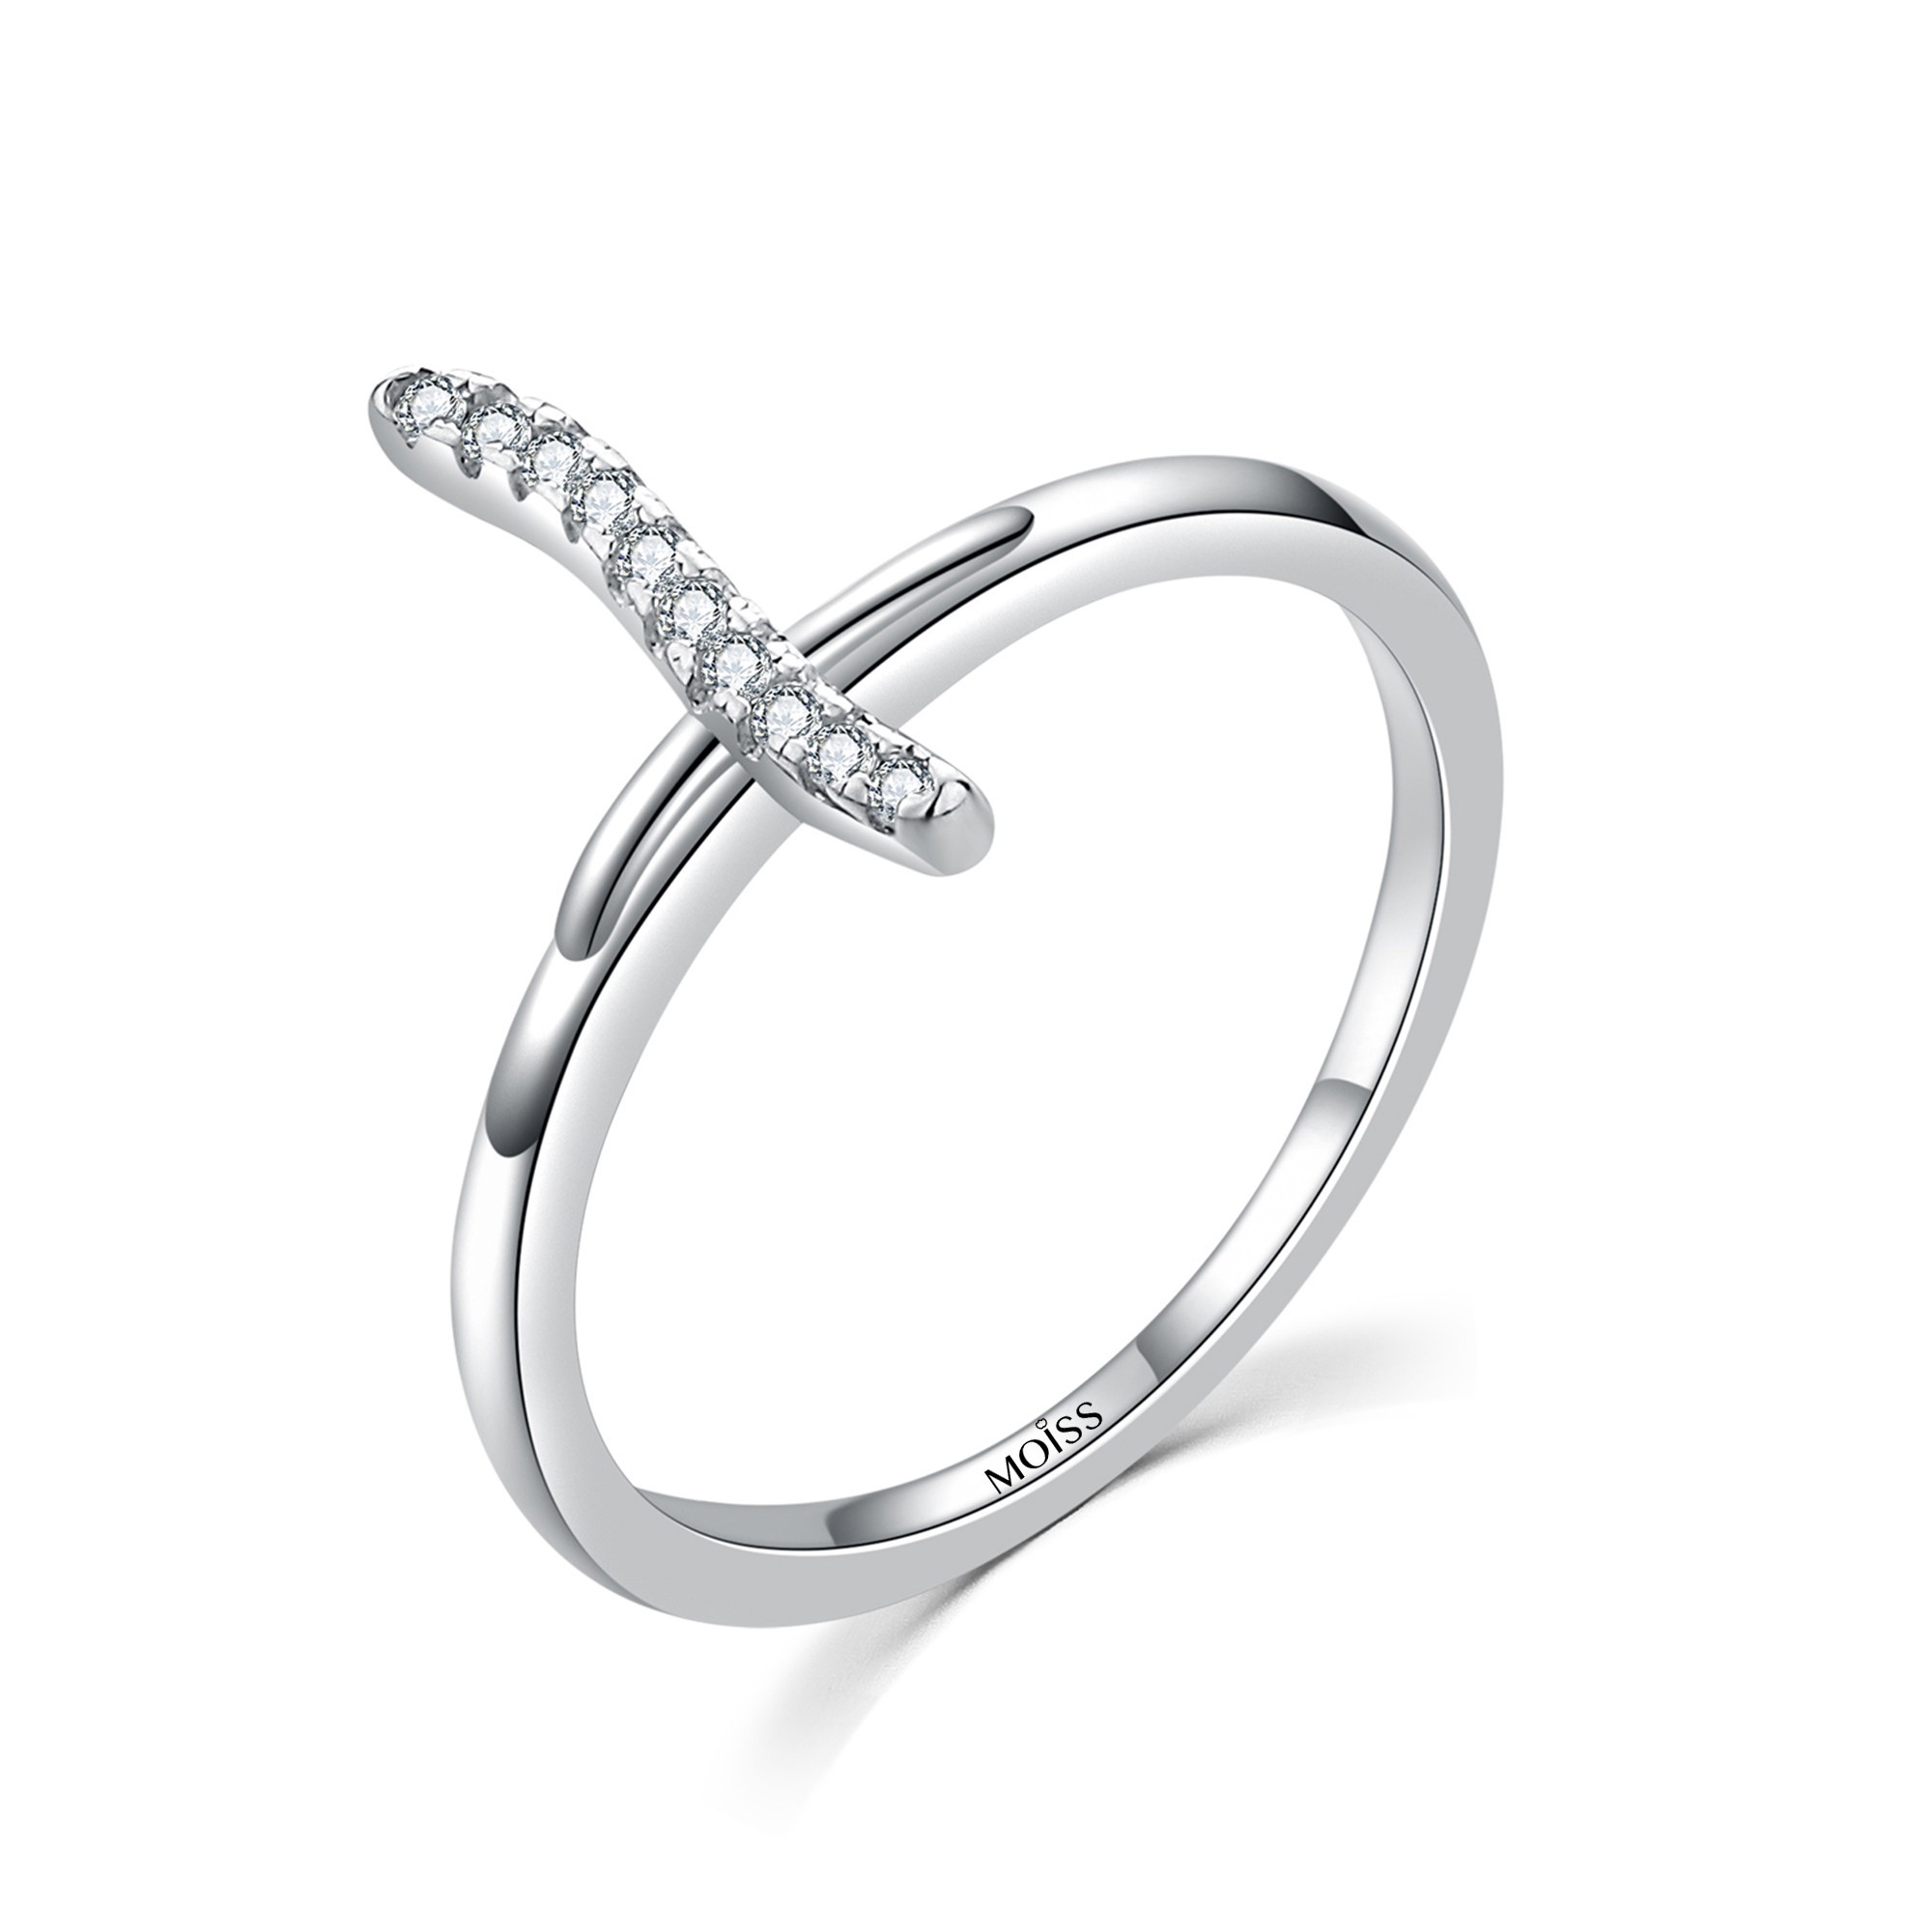 MOISS Moiss stříbrný prsten s bílým zirkonem KŘÍZEK R0001889 Velikost 54 mm R0001891